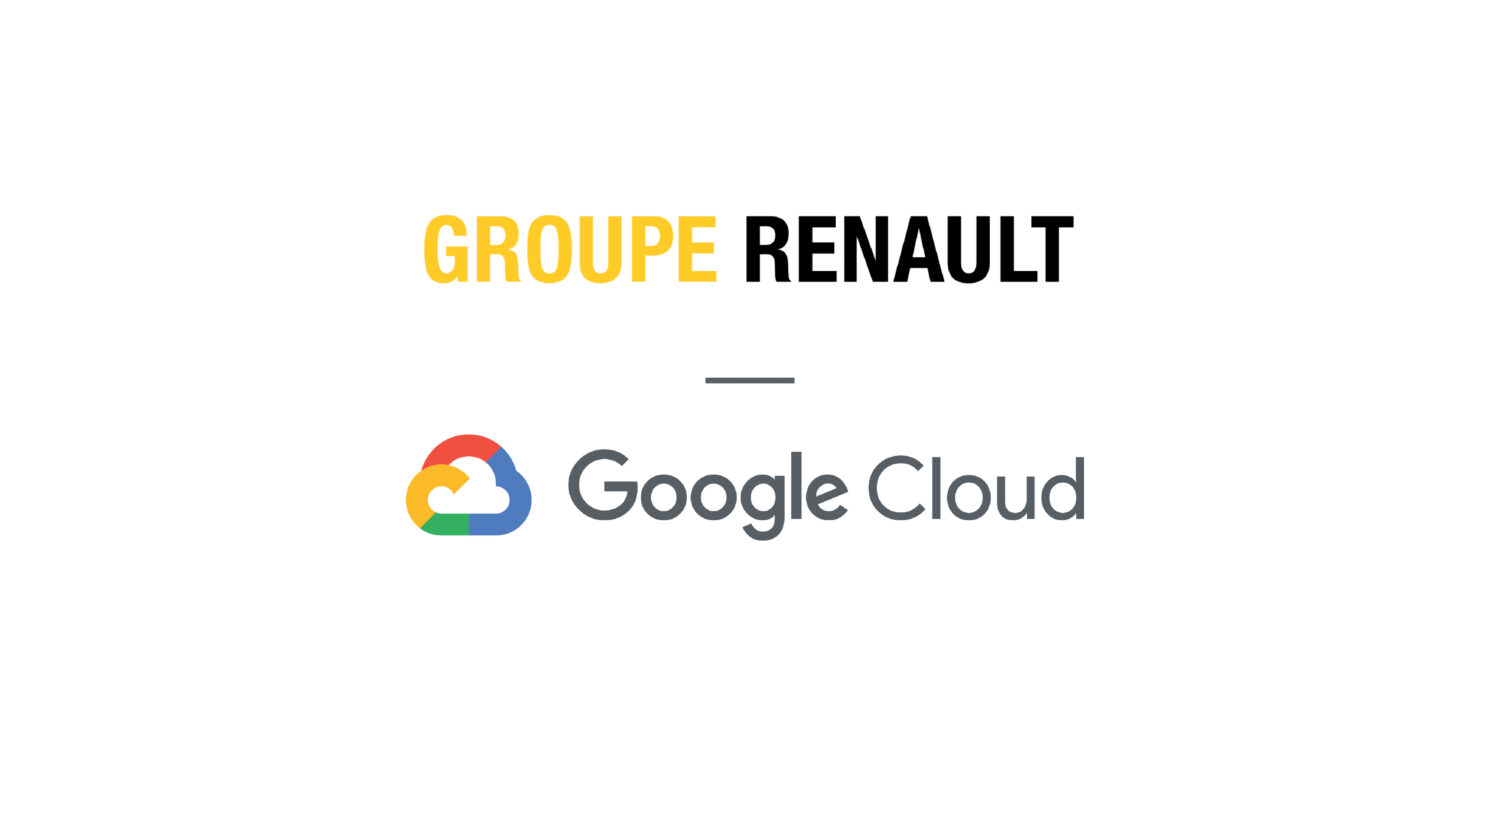 2020 - INDUSTRIE 4.0  GROUPE RENAULT ET GOOGLE CLOUD PARTENAIRES (1).jpg